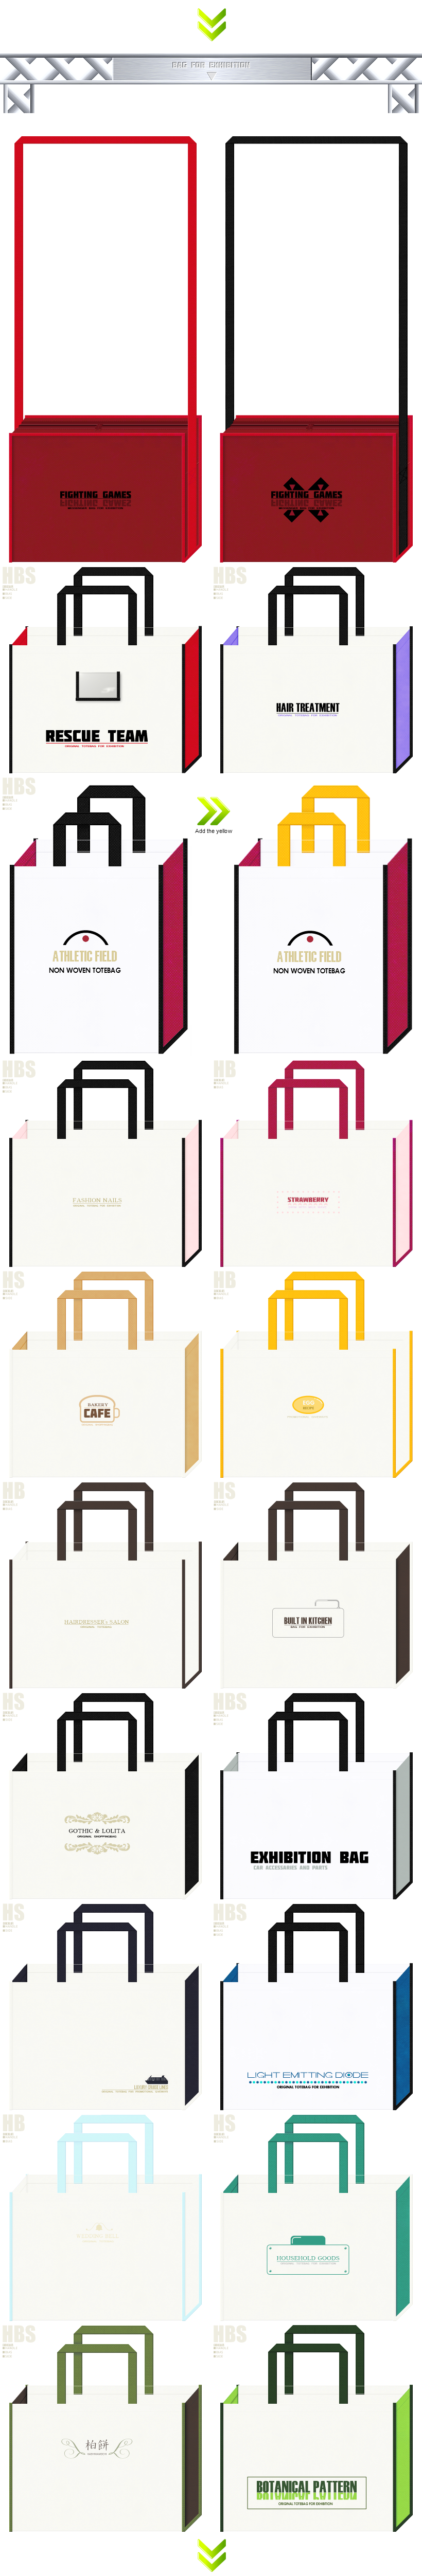 展示会用バッグのオリジナル制作-様々な不織布カラーの組み合わせパターンが可能です。